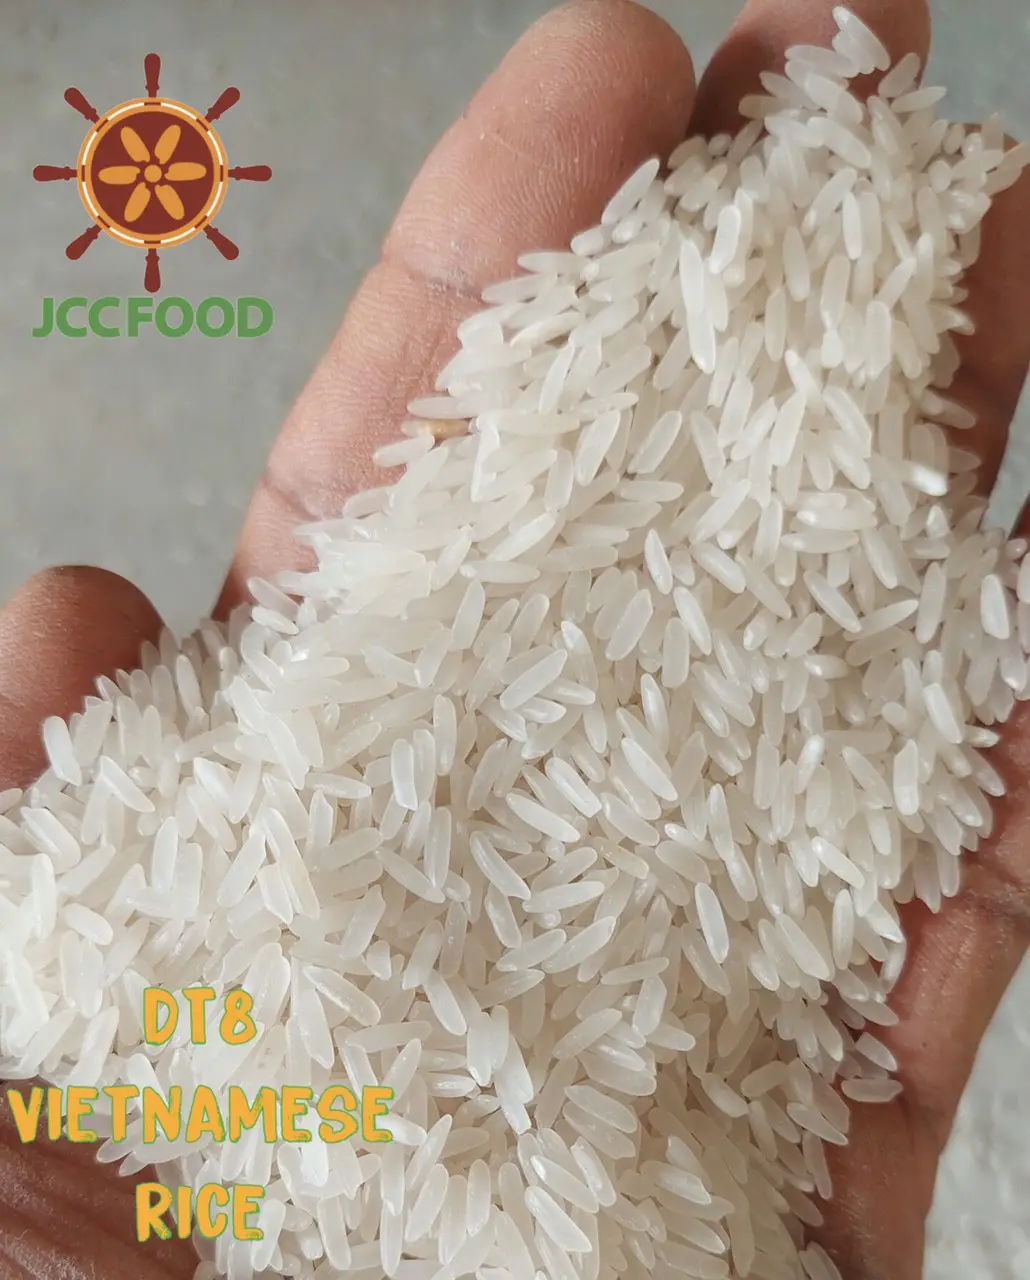 Arroz Natural blanco de grano largo, embalaje para el cliente, alta calidad, venta al por mayor, DT8, vietnamita, con logotipo personalizado